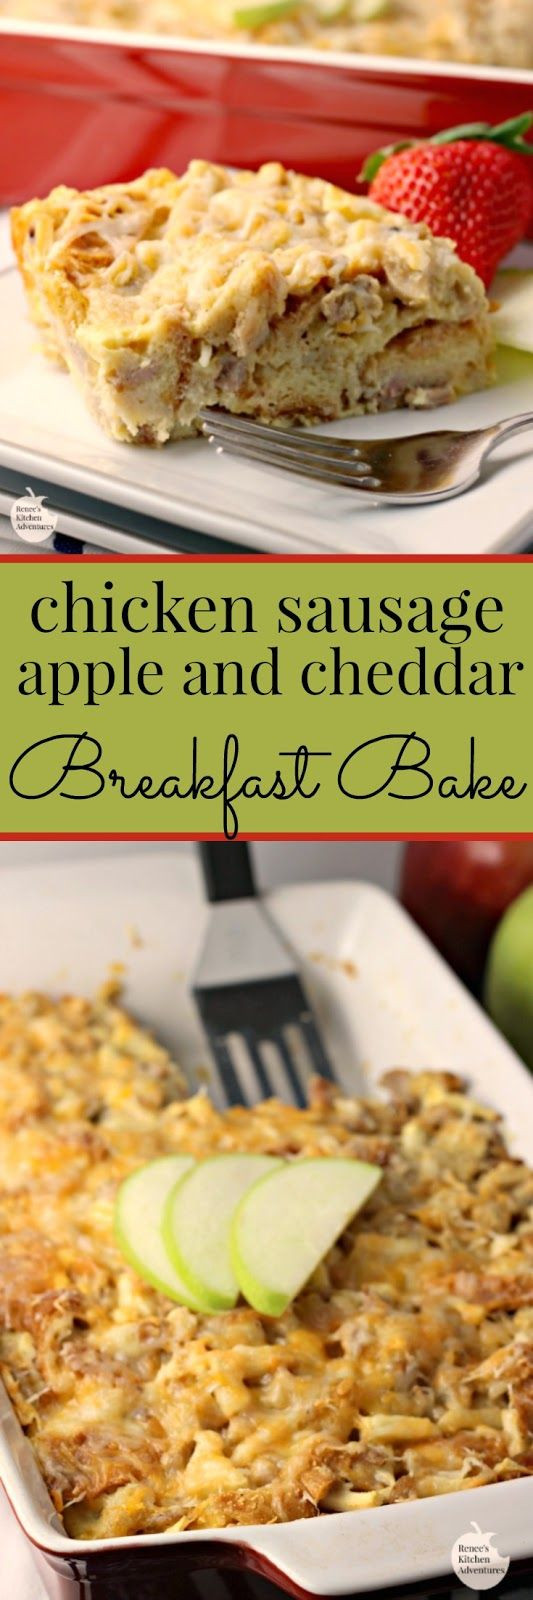 Chicken Breakfast Recipe
 Chicken Sausage Apple and Cheddar Breakfast Bake